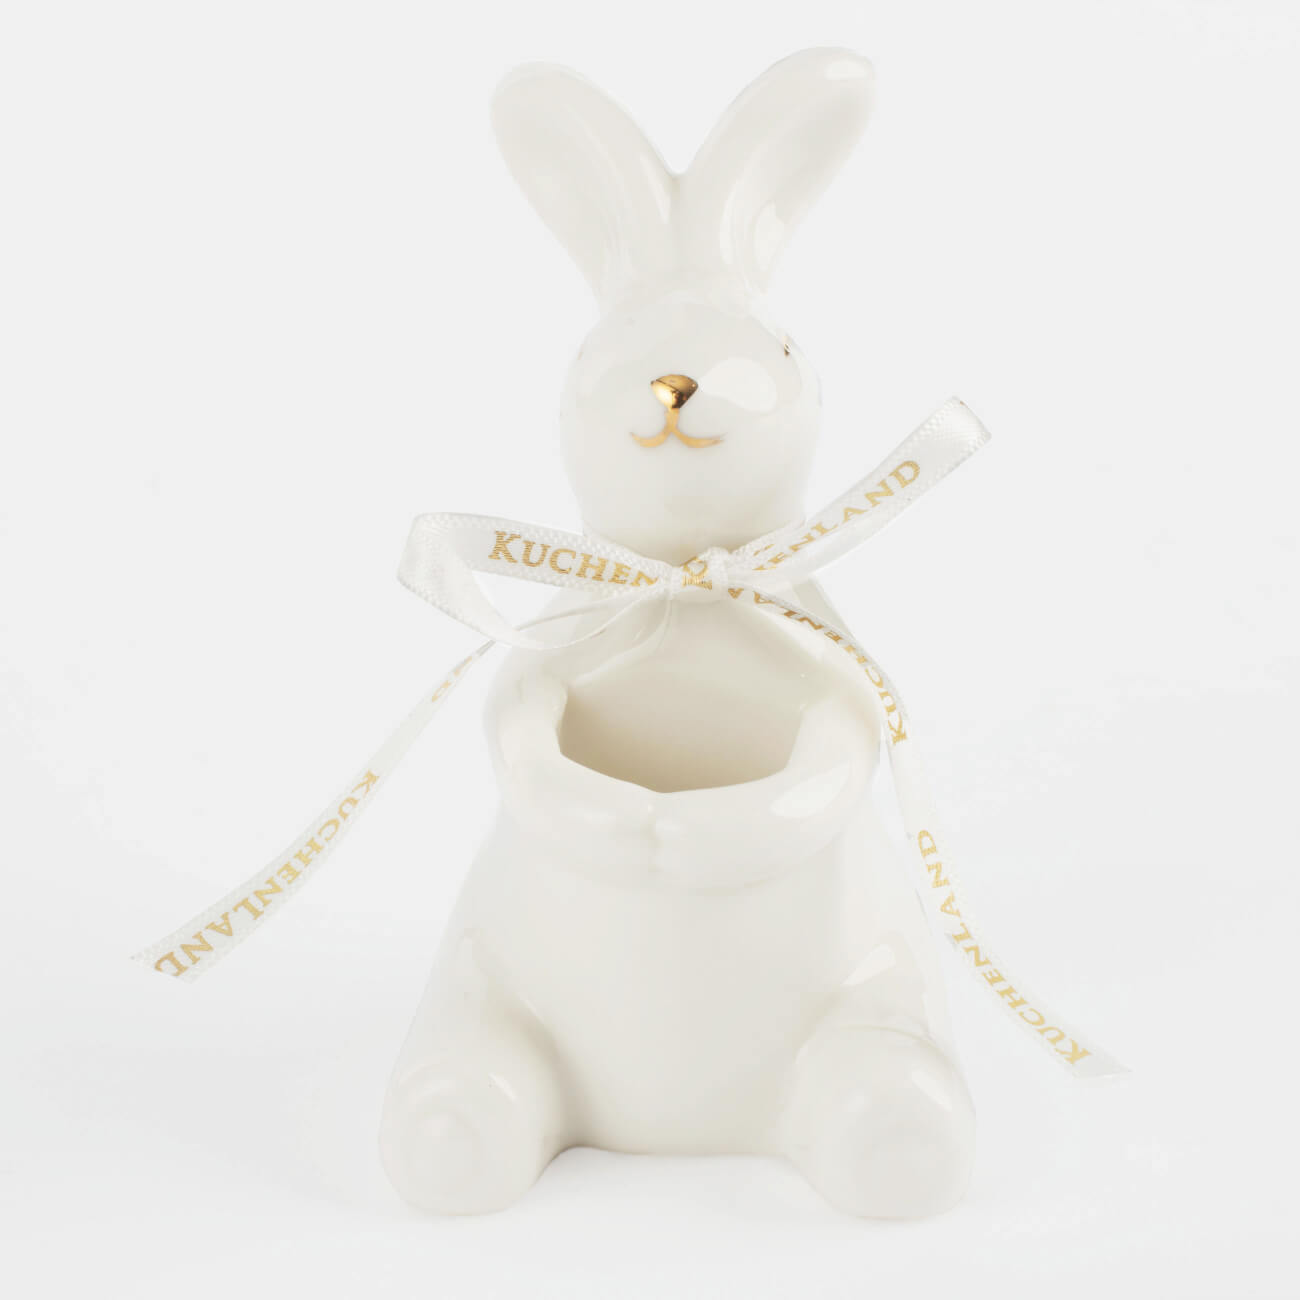 Подставка для зубочисток, 10 см, фарфор P, бело-золотистая, Кролик, Easter gold изображение № 2